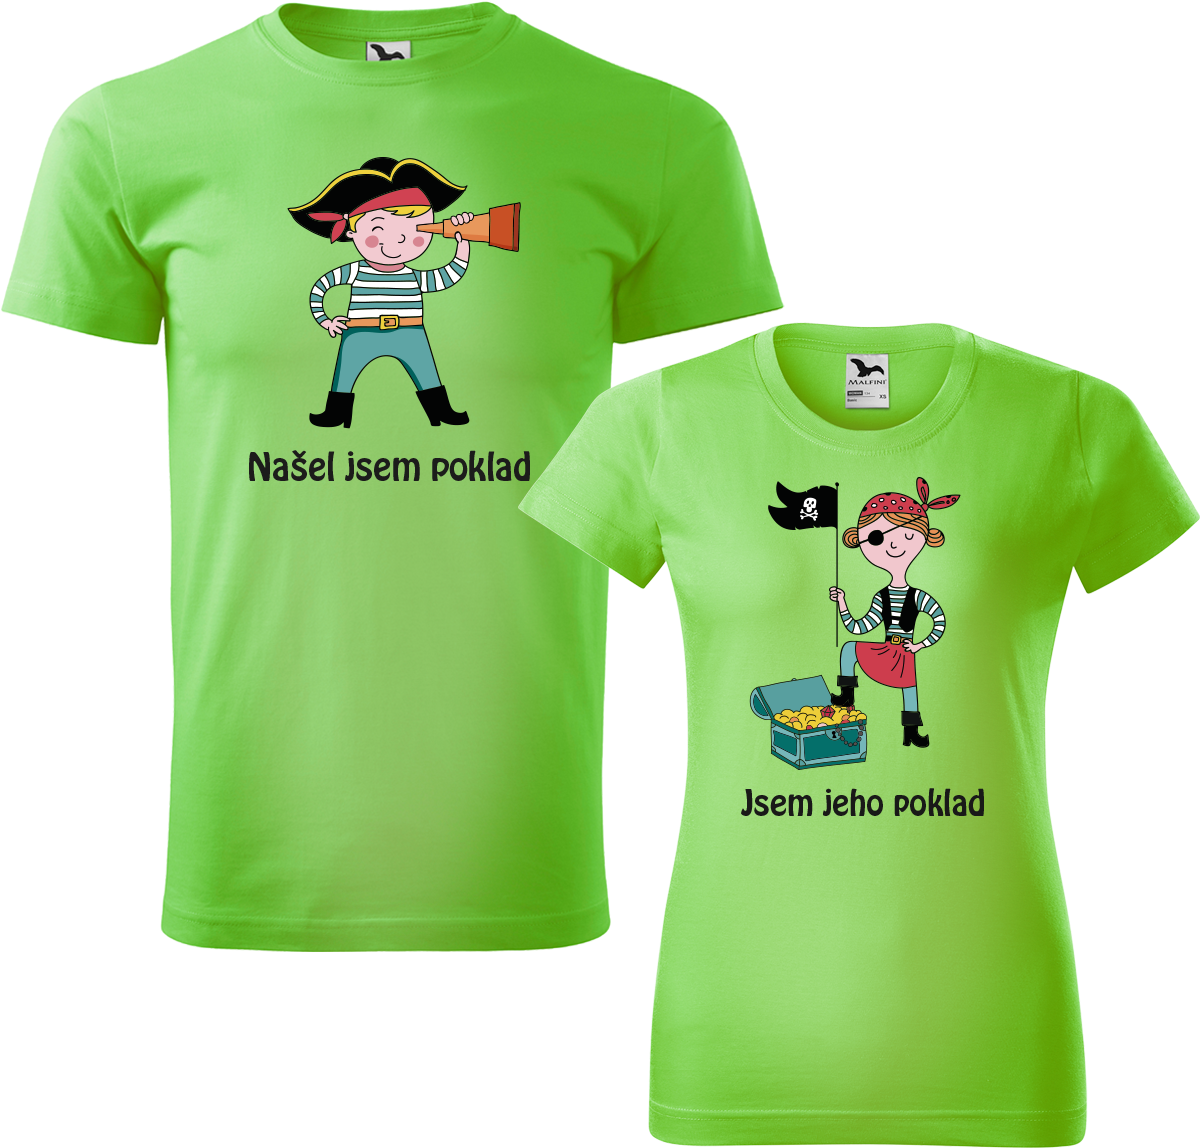 Trička pro páry - Poklad Barva: Apple Green (92), Velikost dámské tričko: L, Velikost pánské tričko: XL